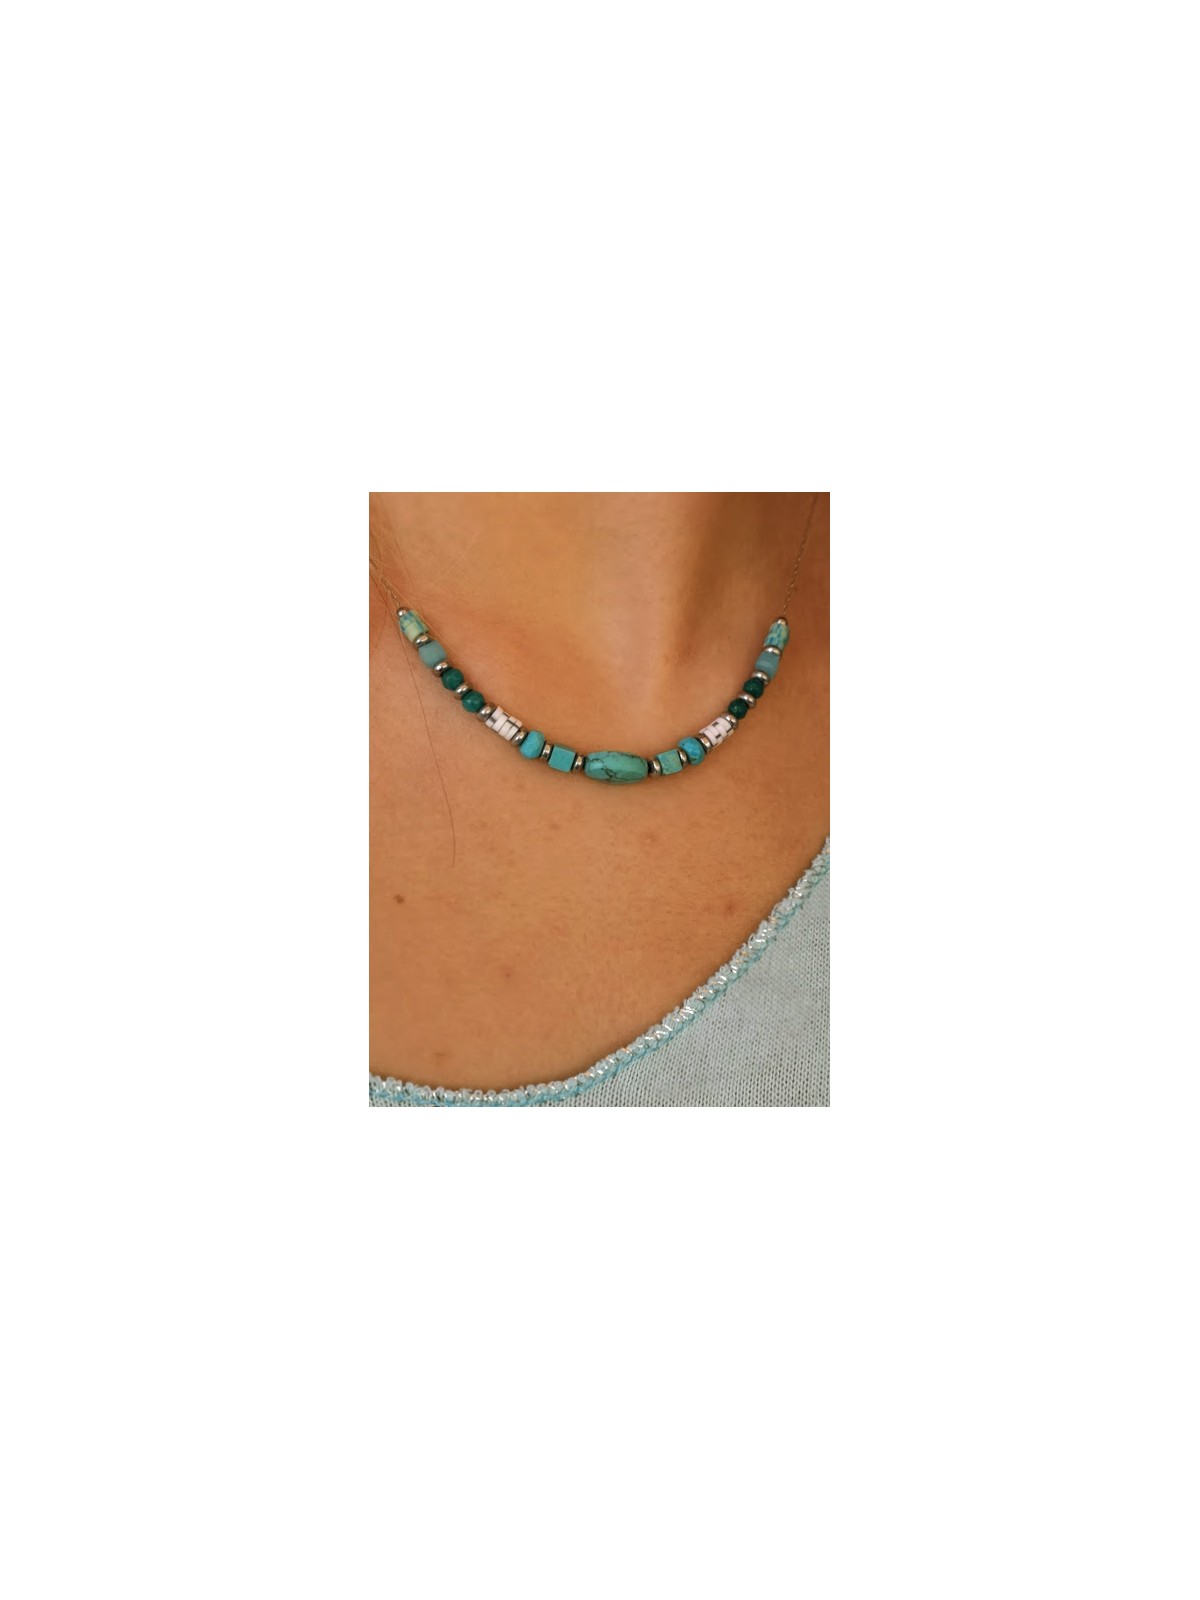 collier ras de cou avec chaine argentee et pierres bleues | 2 vue rapprochee | Tilleilmenthe mode boutique de vetements femme en